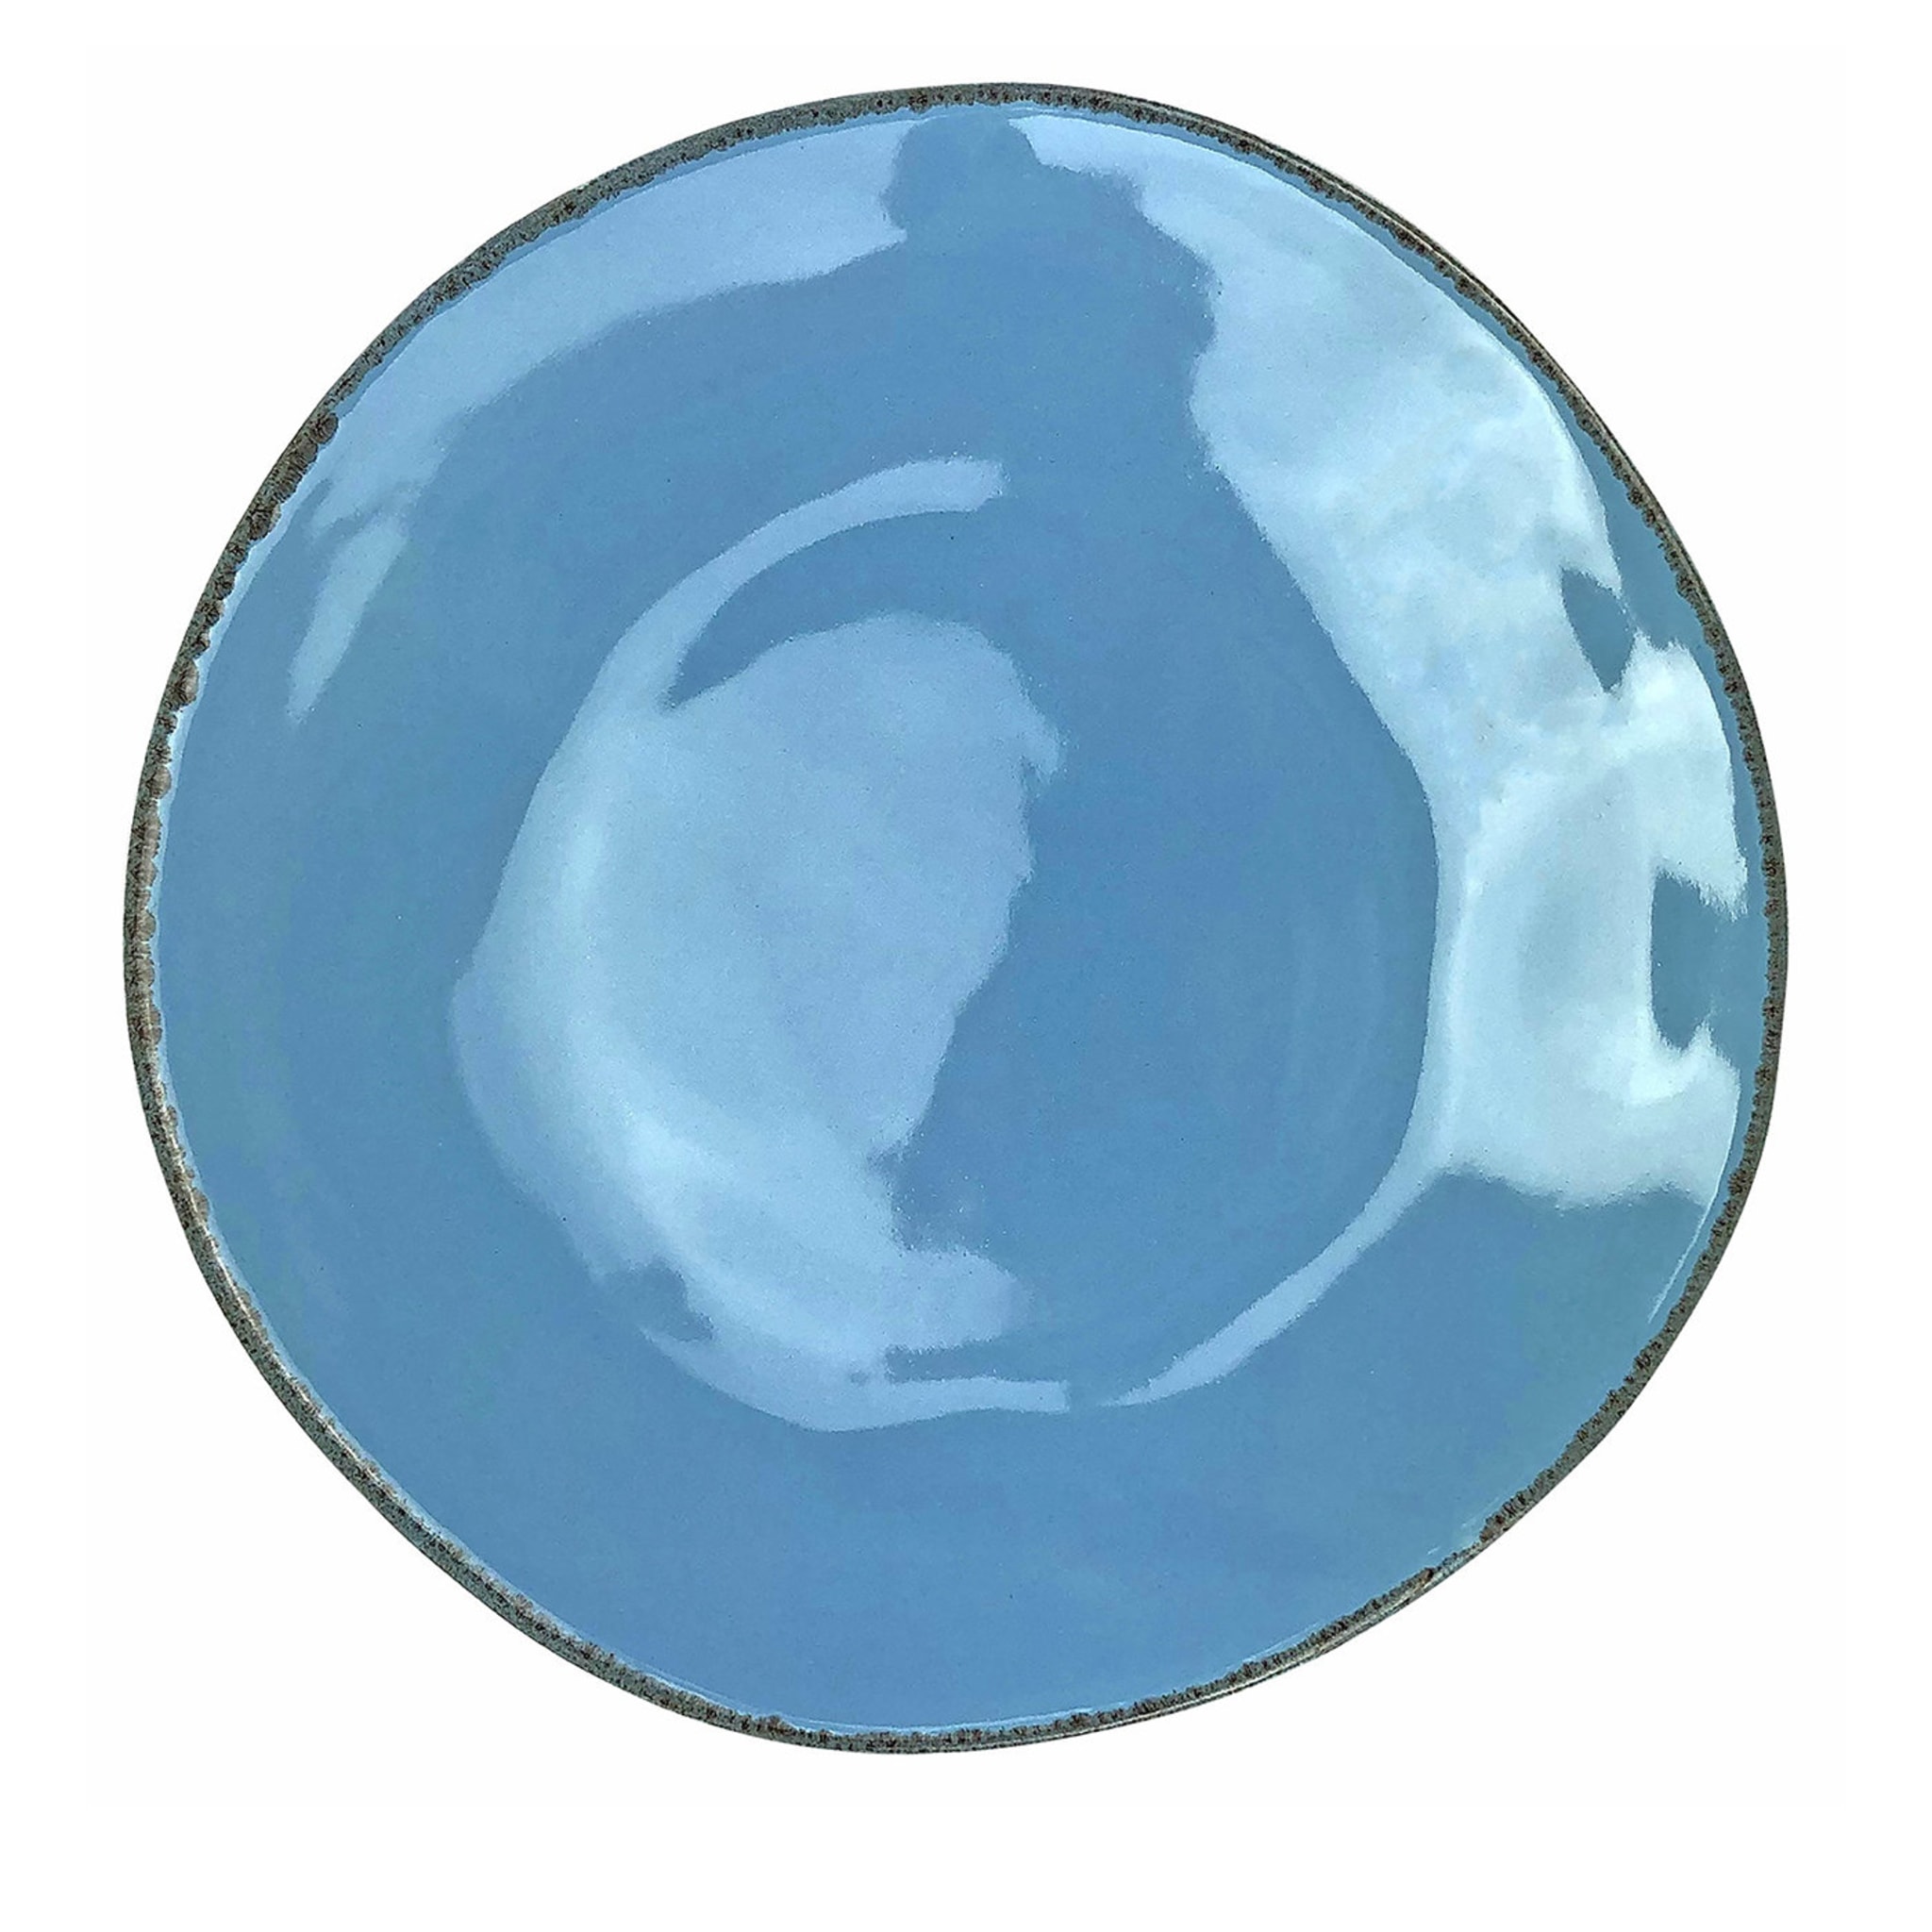 Materia 6er-Set runde hellblaue Platzteller - Hauptansicht